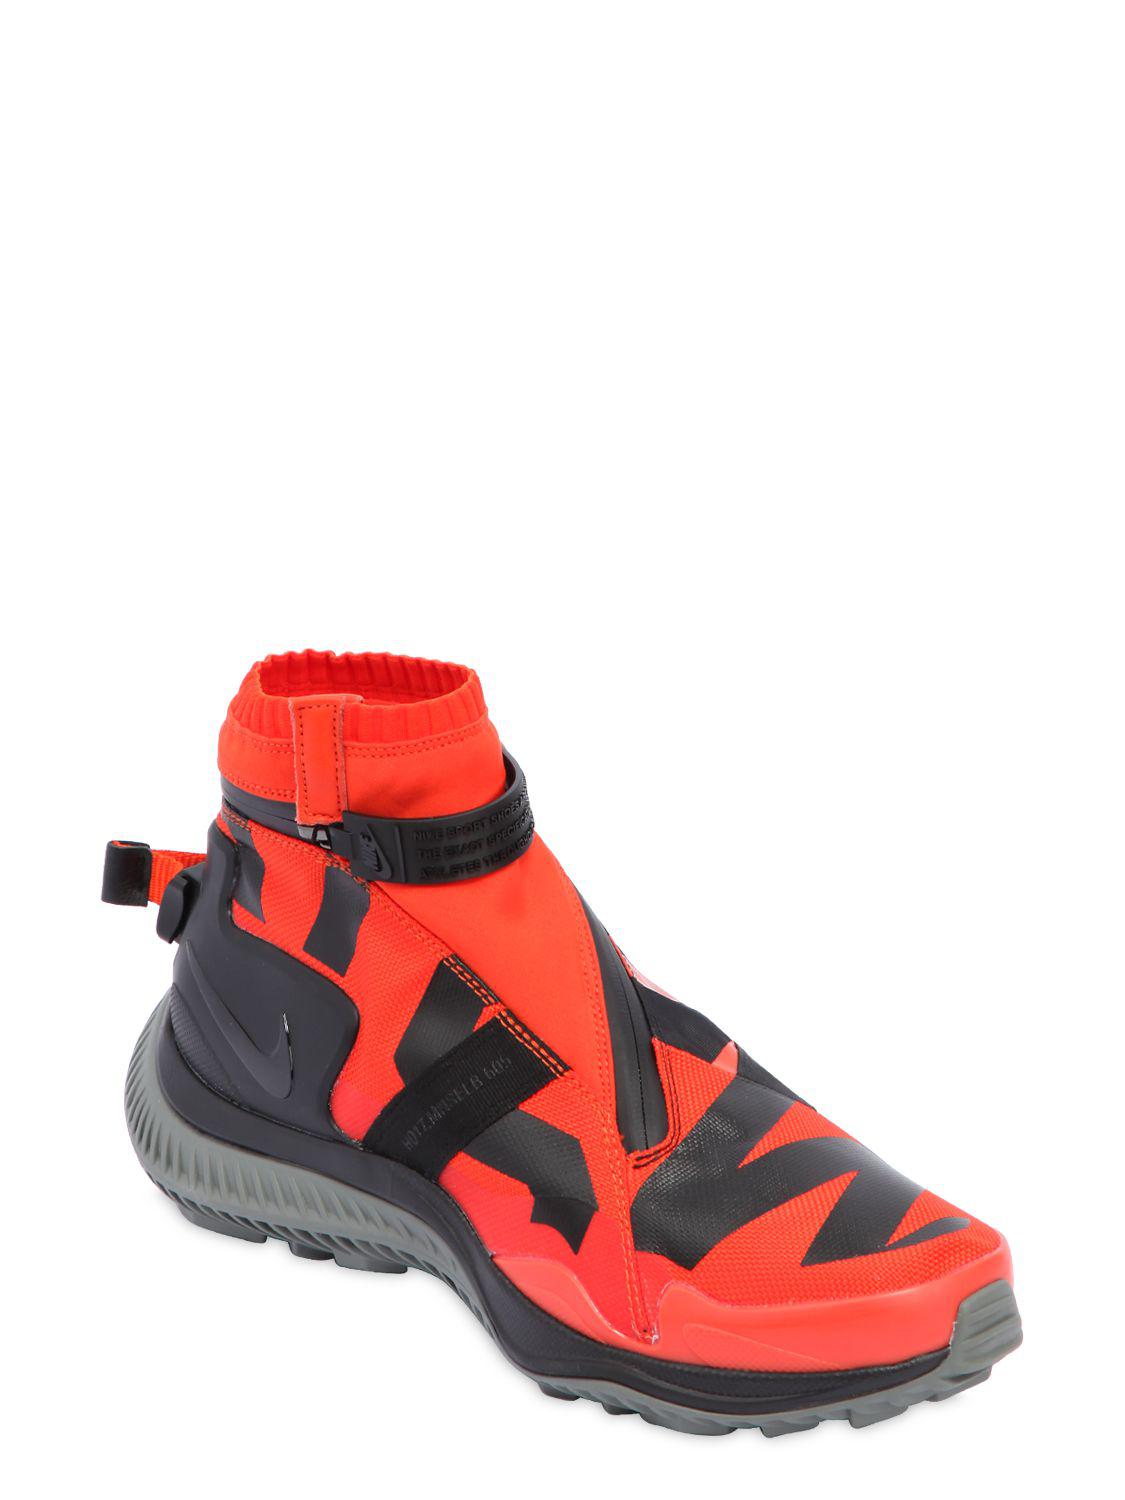 Lyst - Nike Acg.008.zpbt Waterproof Sneaker Boots in Red for Men